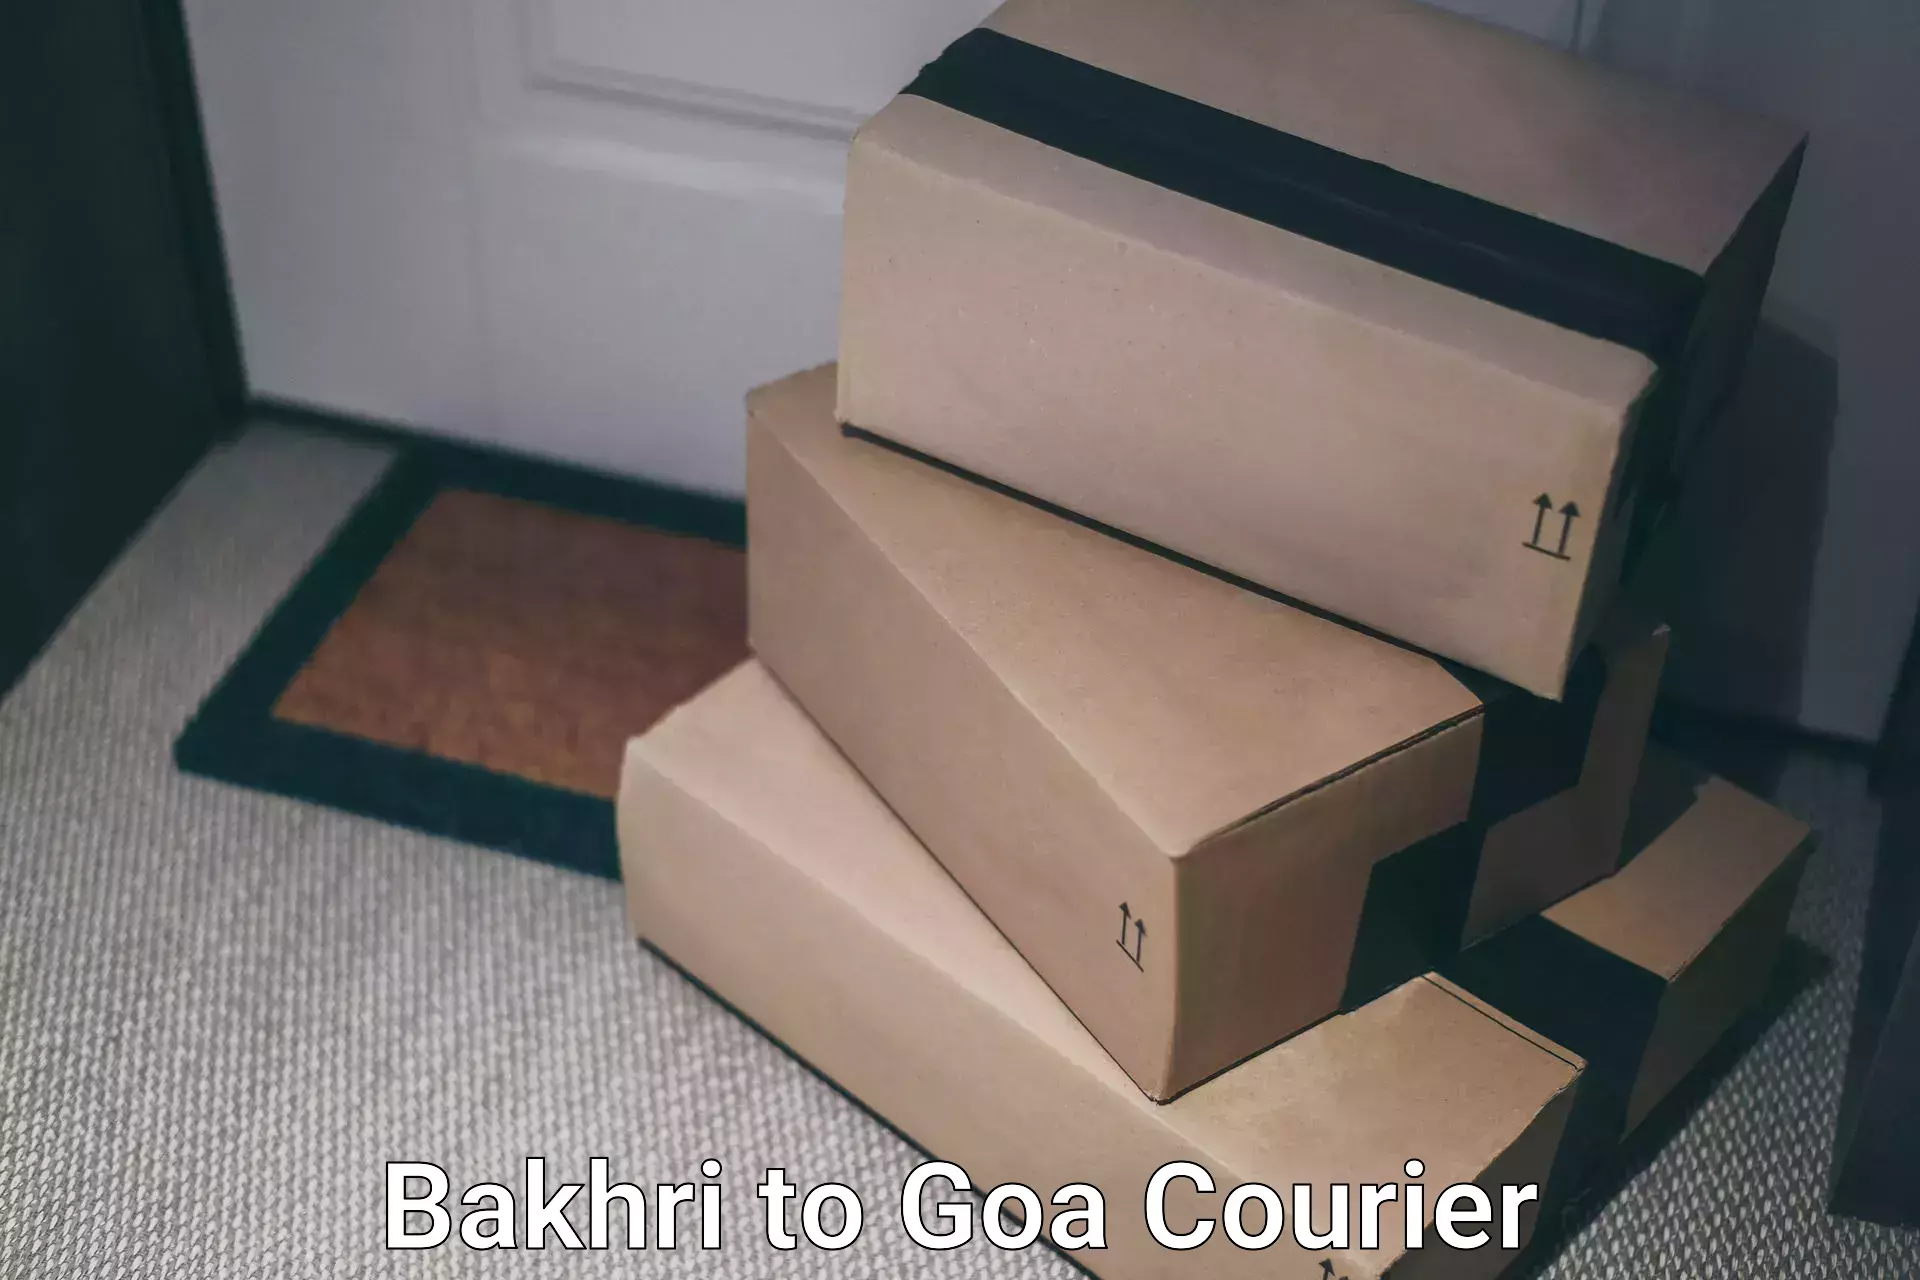 Easy access courier services Bakhri to Goa